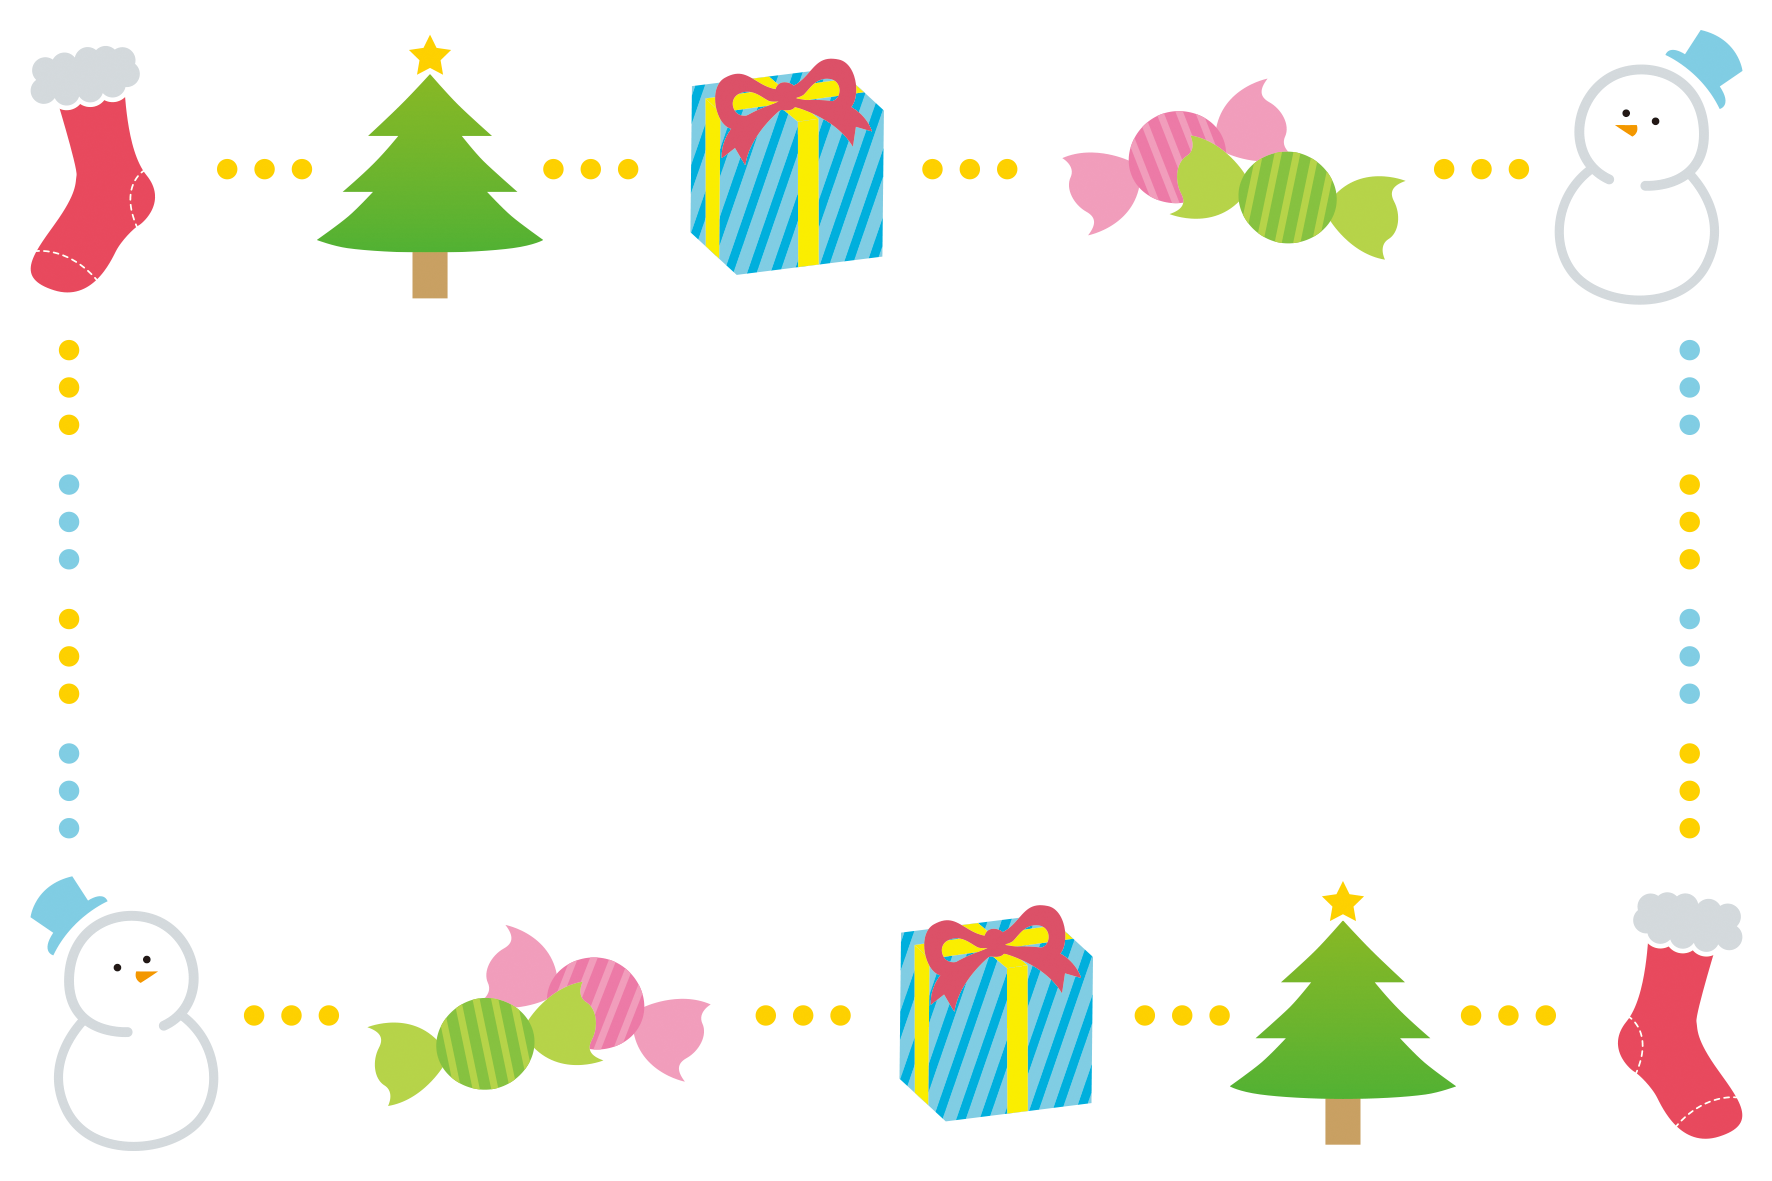 ツリー、プレゼント、雪だるまなどクリスマスをモチーフにしたフレーム素材です。オリジナルのクリスマスカードにしても楽しそう♪